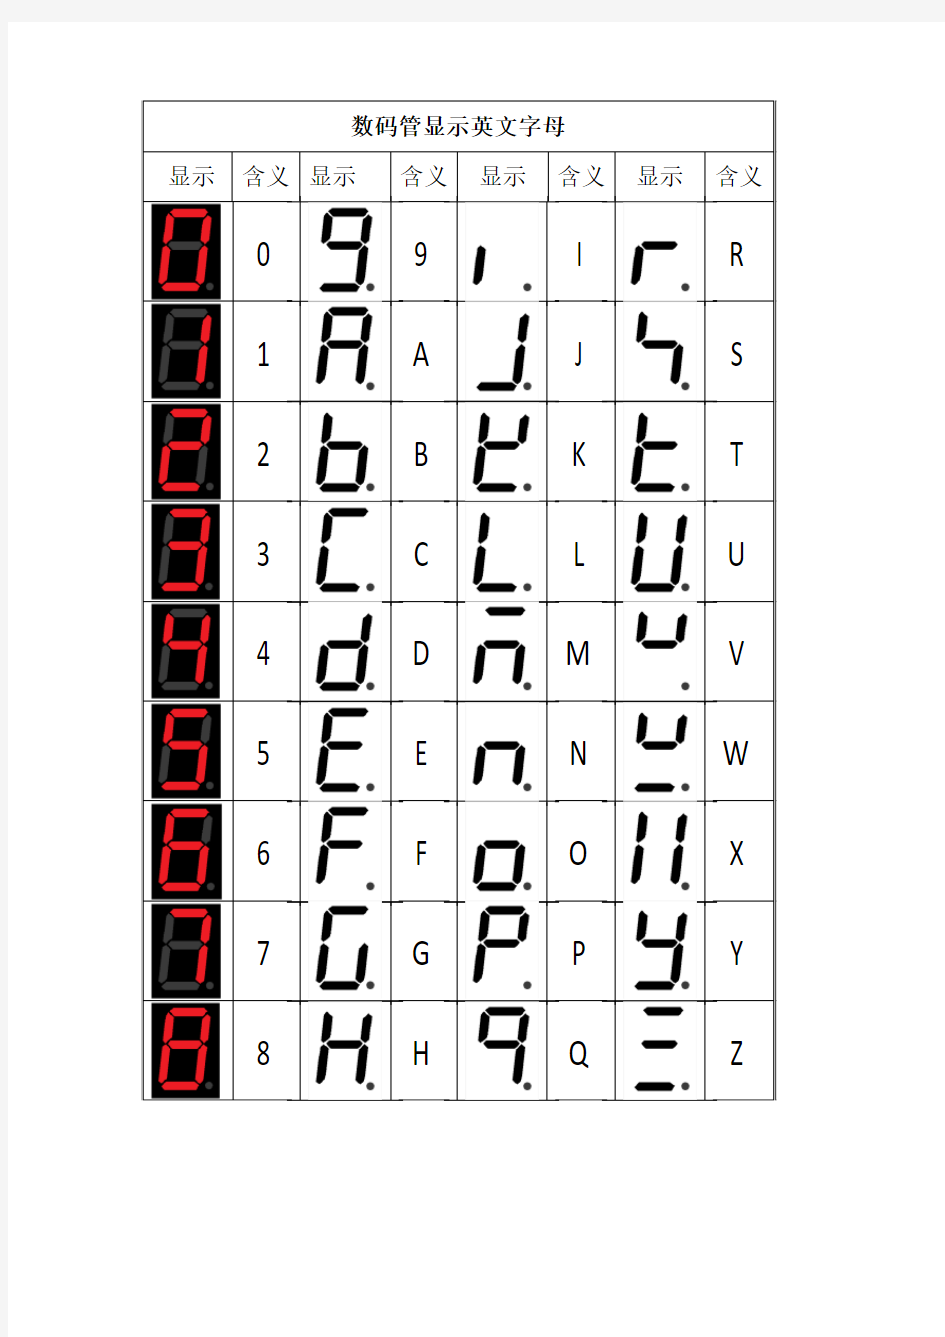 7段数码管显示英文字母和数字